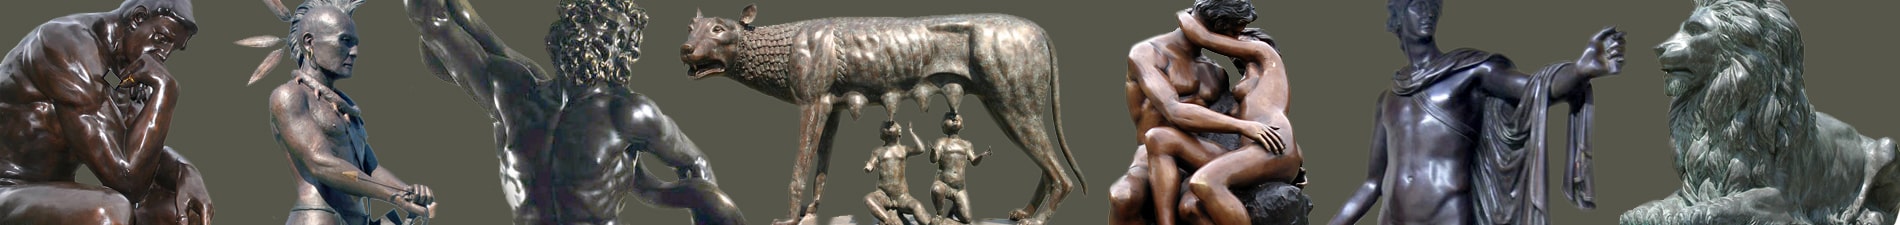 Animals bronze sculptures